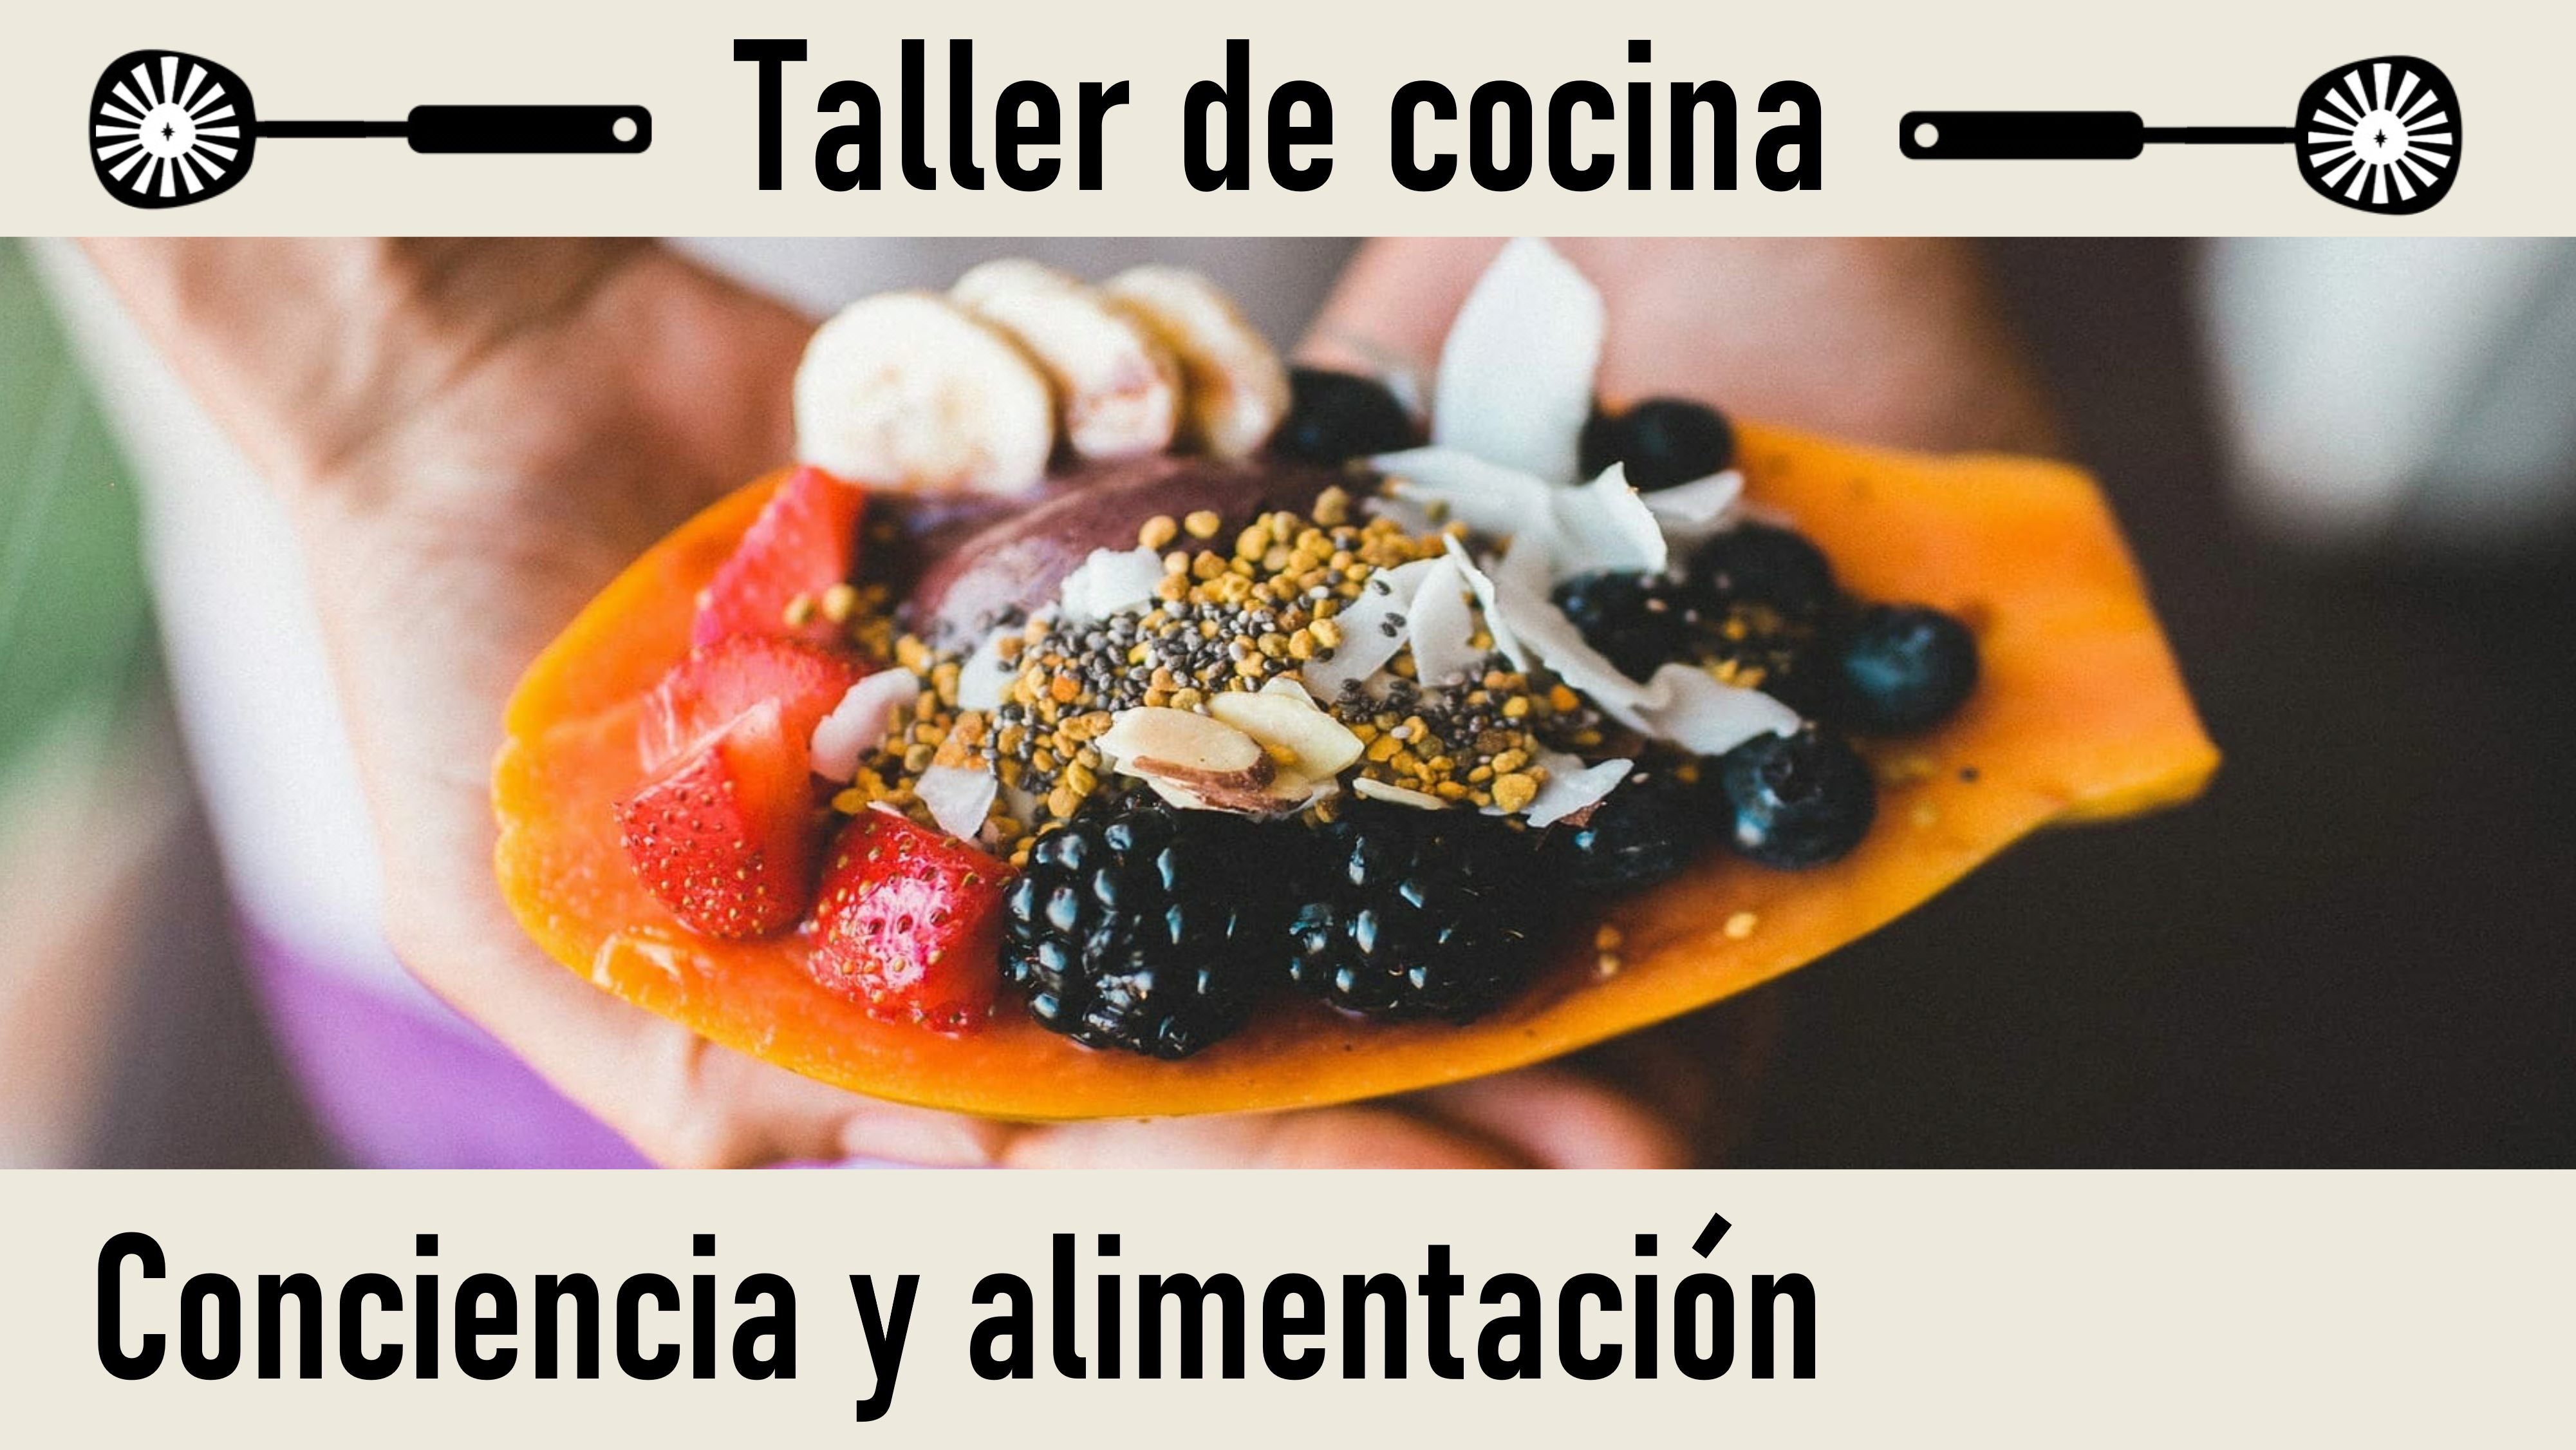 Taller de Cocina.Conferencia: Conciencia y alimentación (1 Junio 2020) On-line desde Madrid